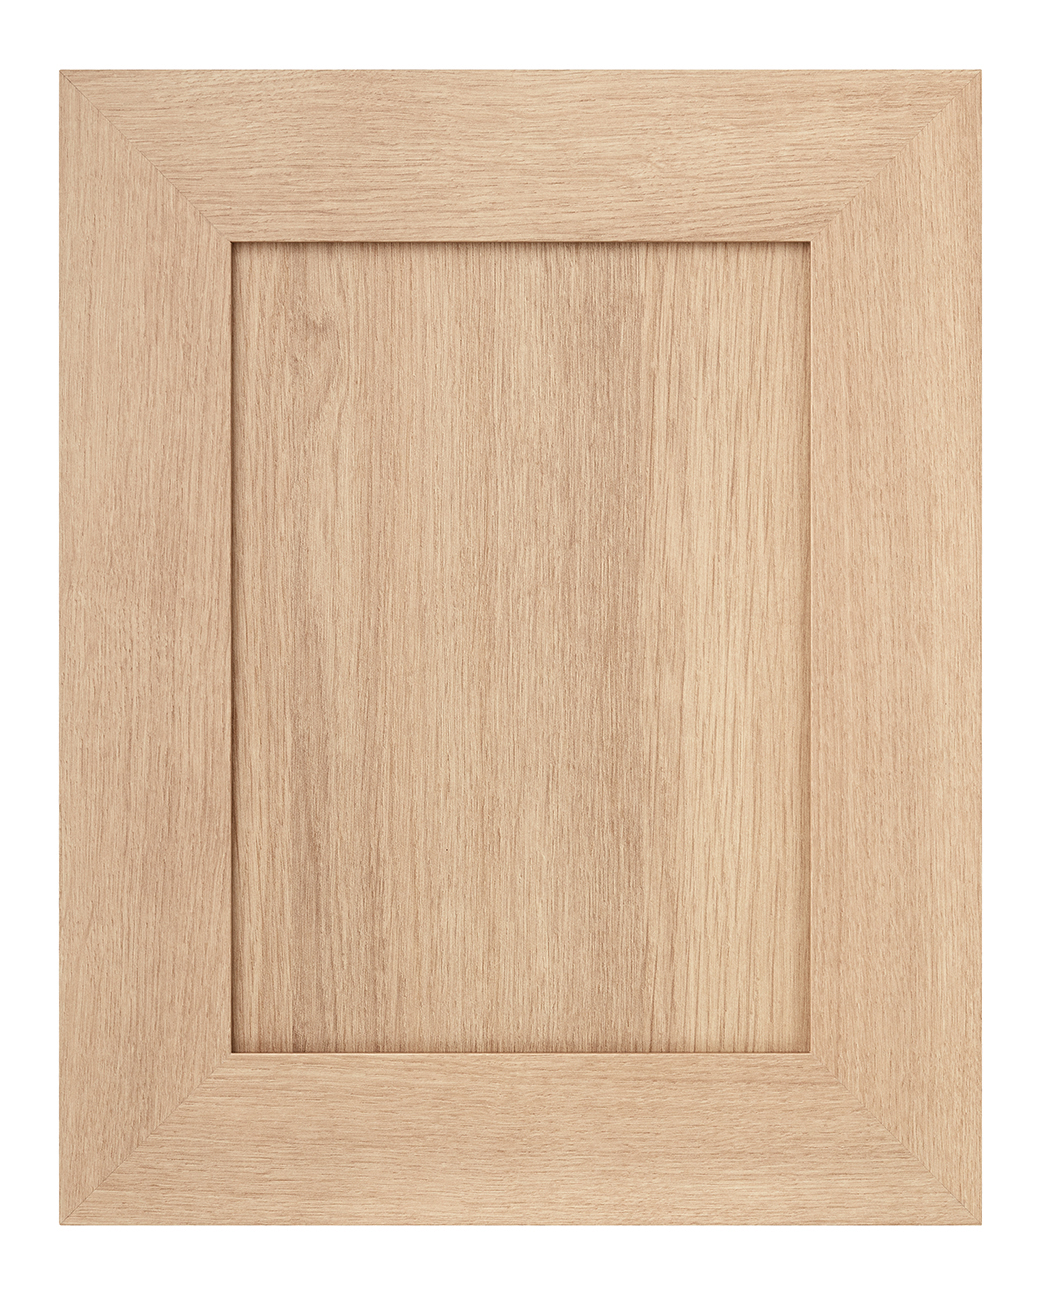 Alpha cabinet door in Tafisa 581 Sheer Beauty